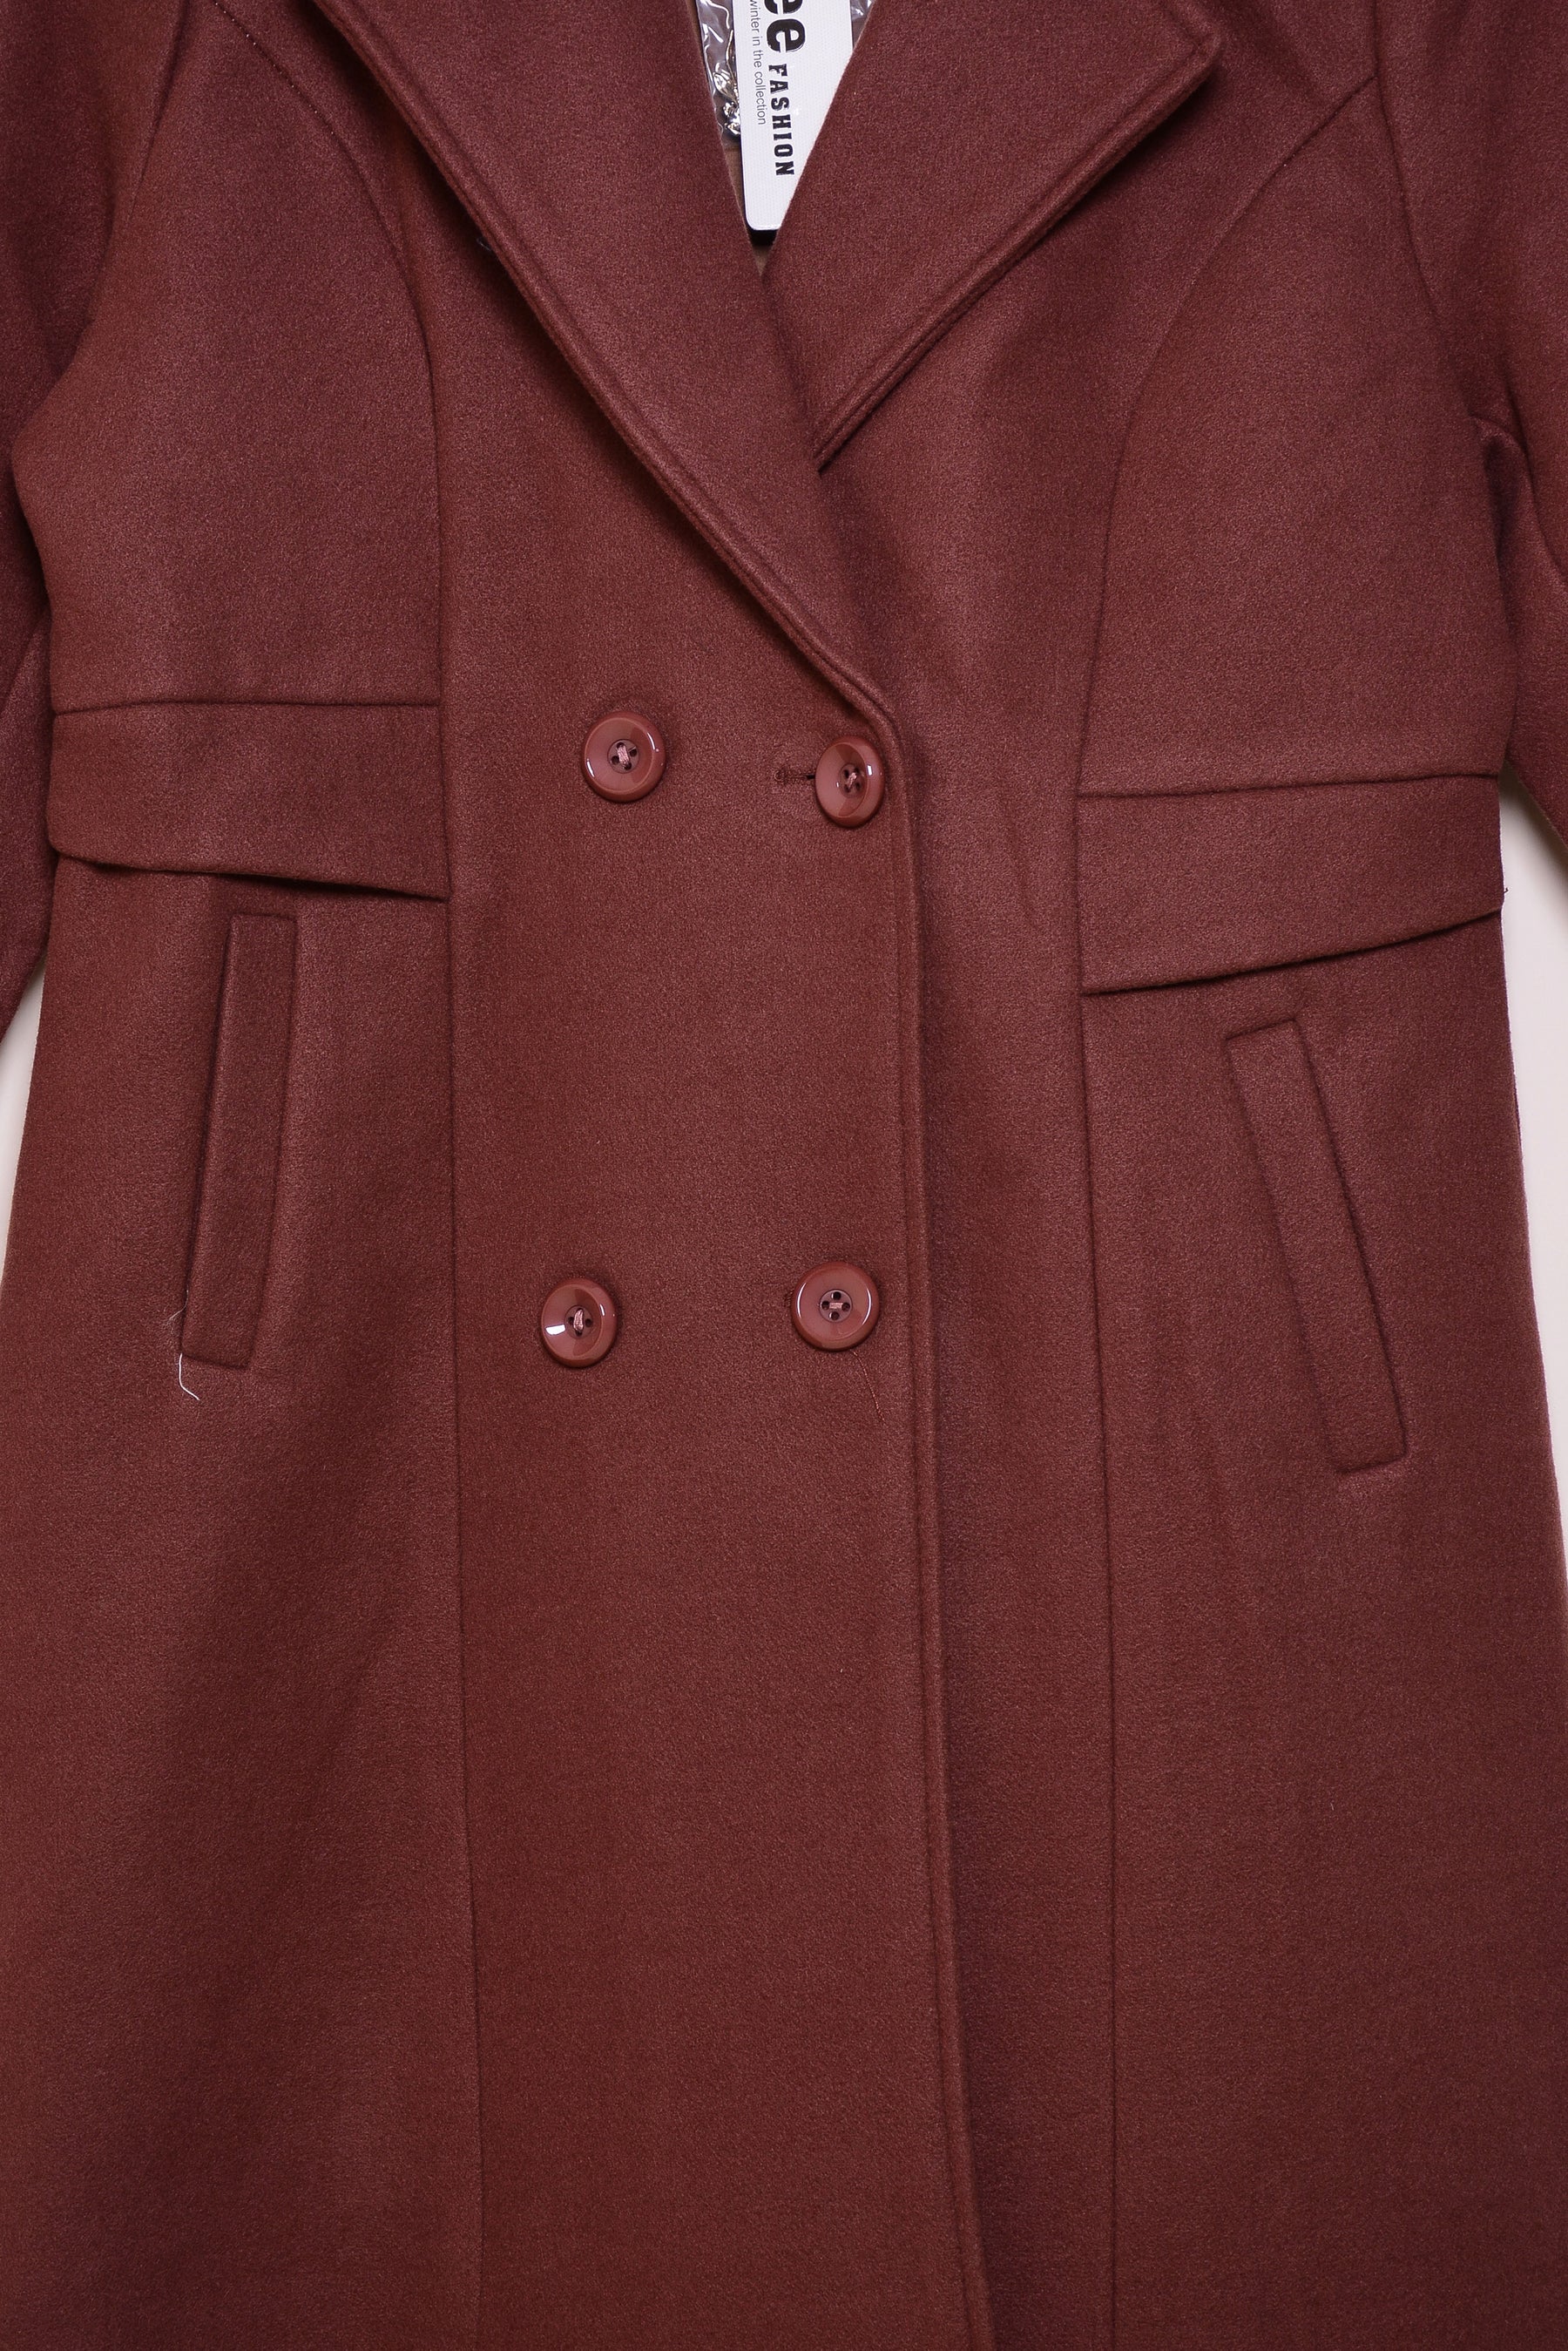 Ladies Winter Long Coats ykn-586 Brown